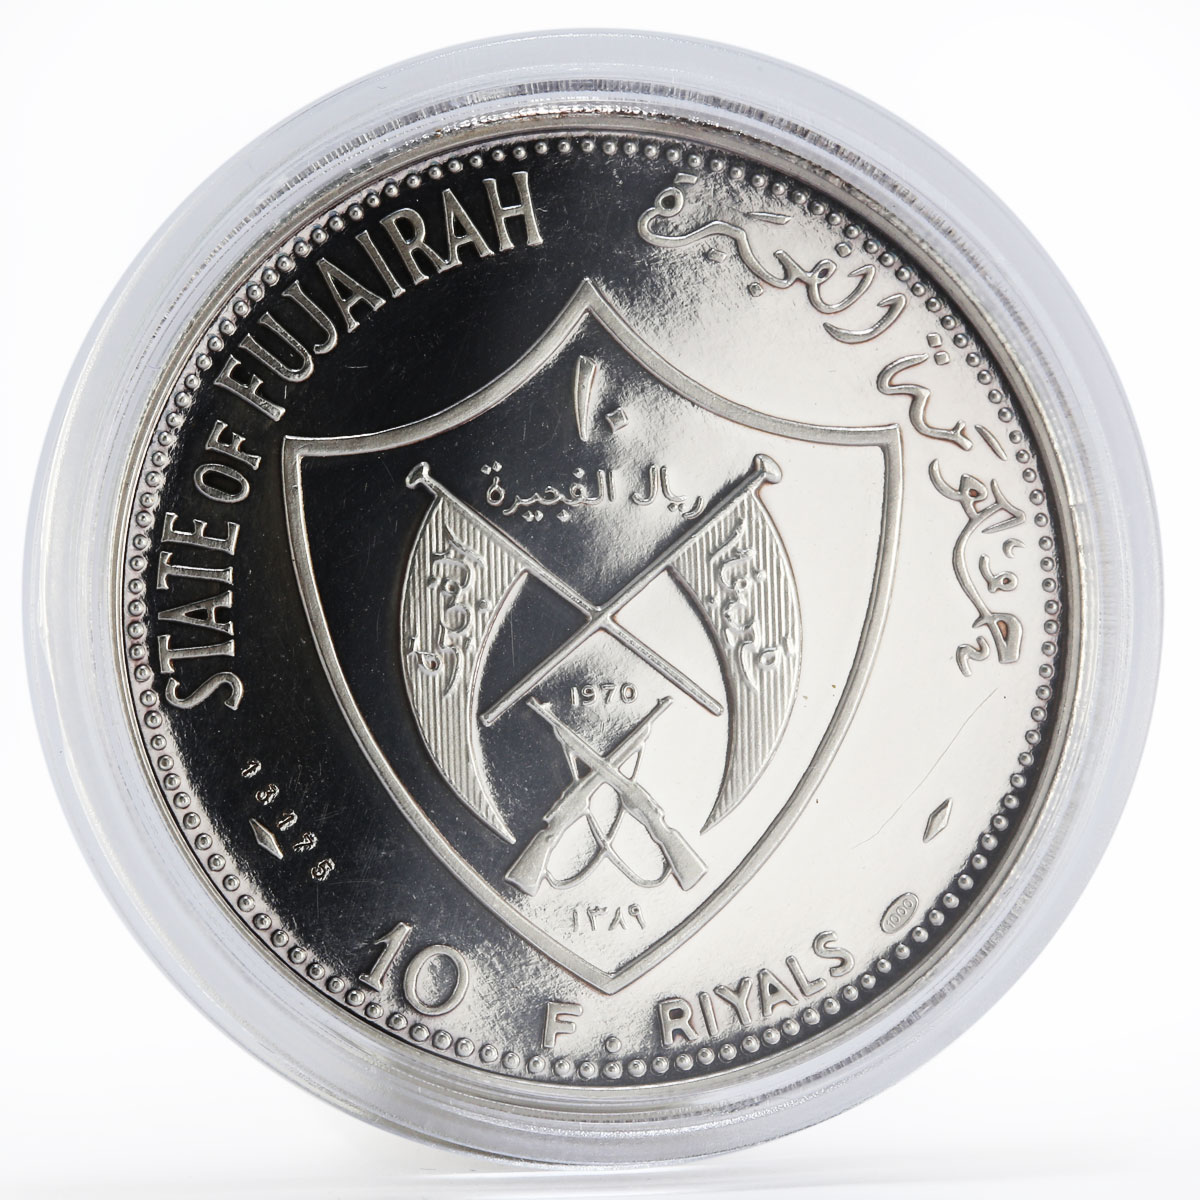 Fujairah 10 riyals Apollo XIV Moon Landing Program proof silver coin 1970